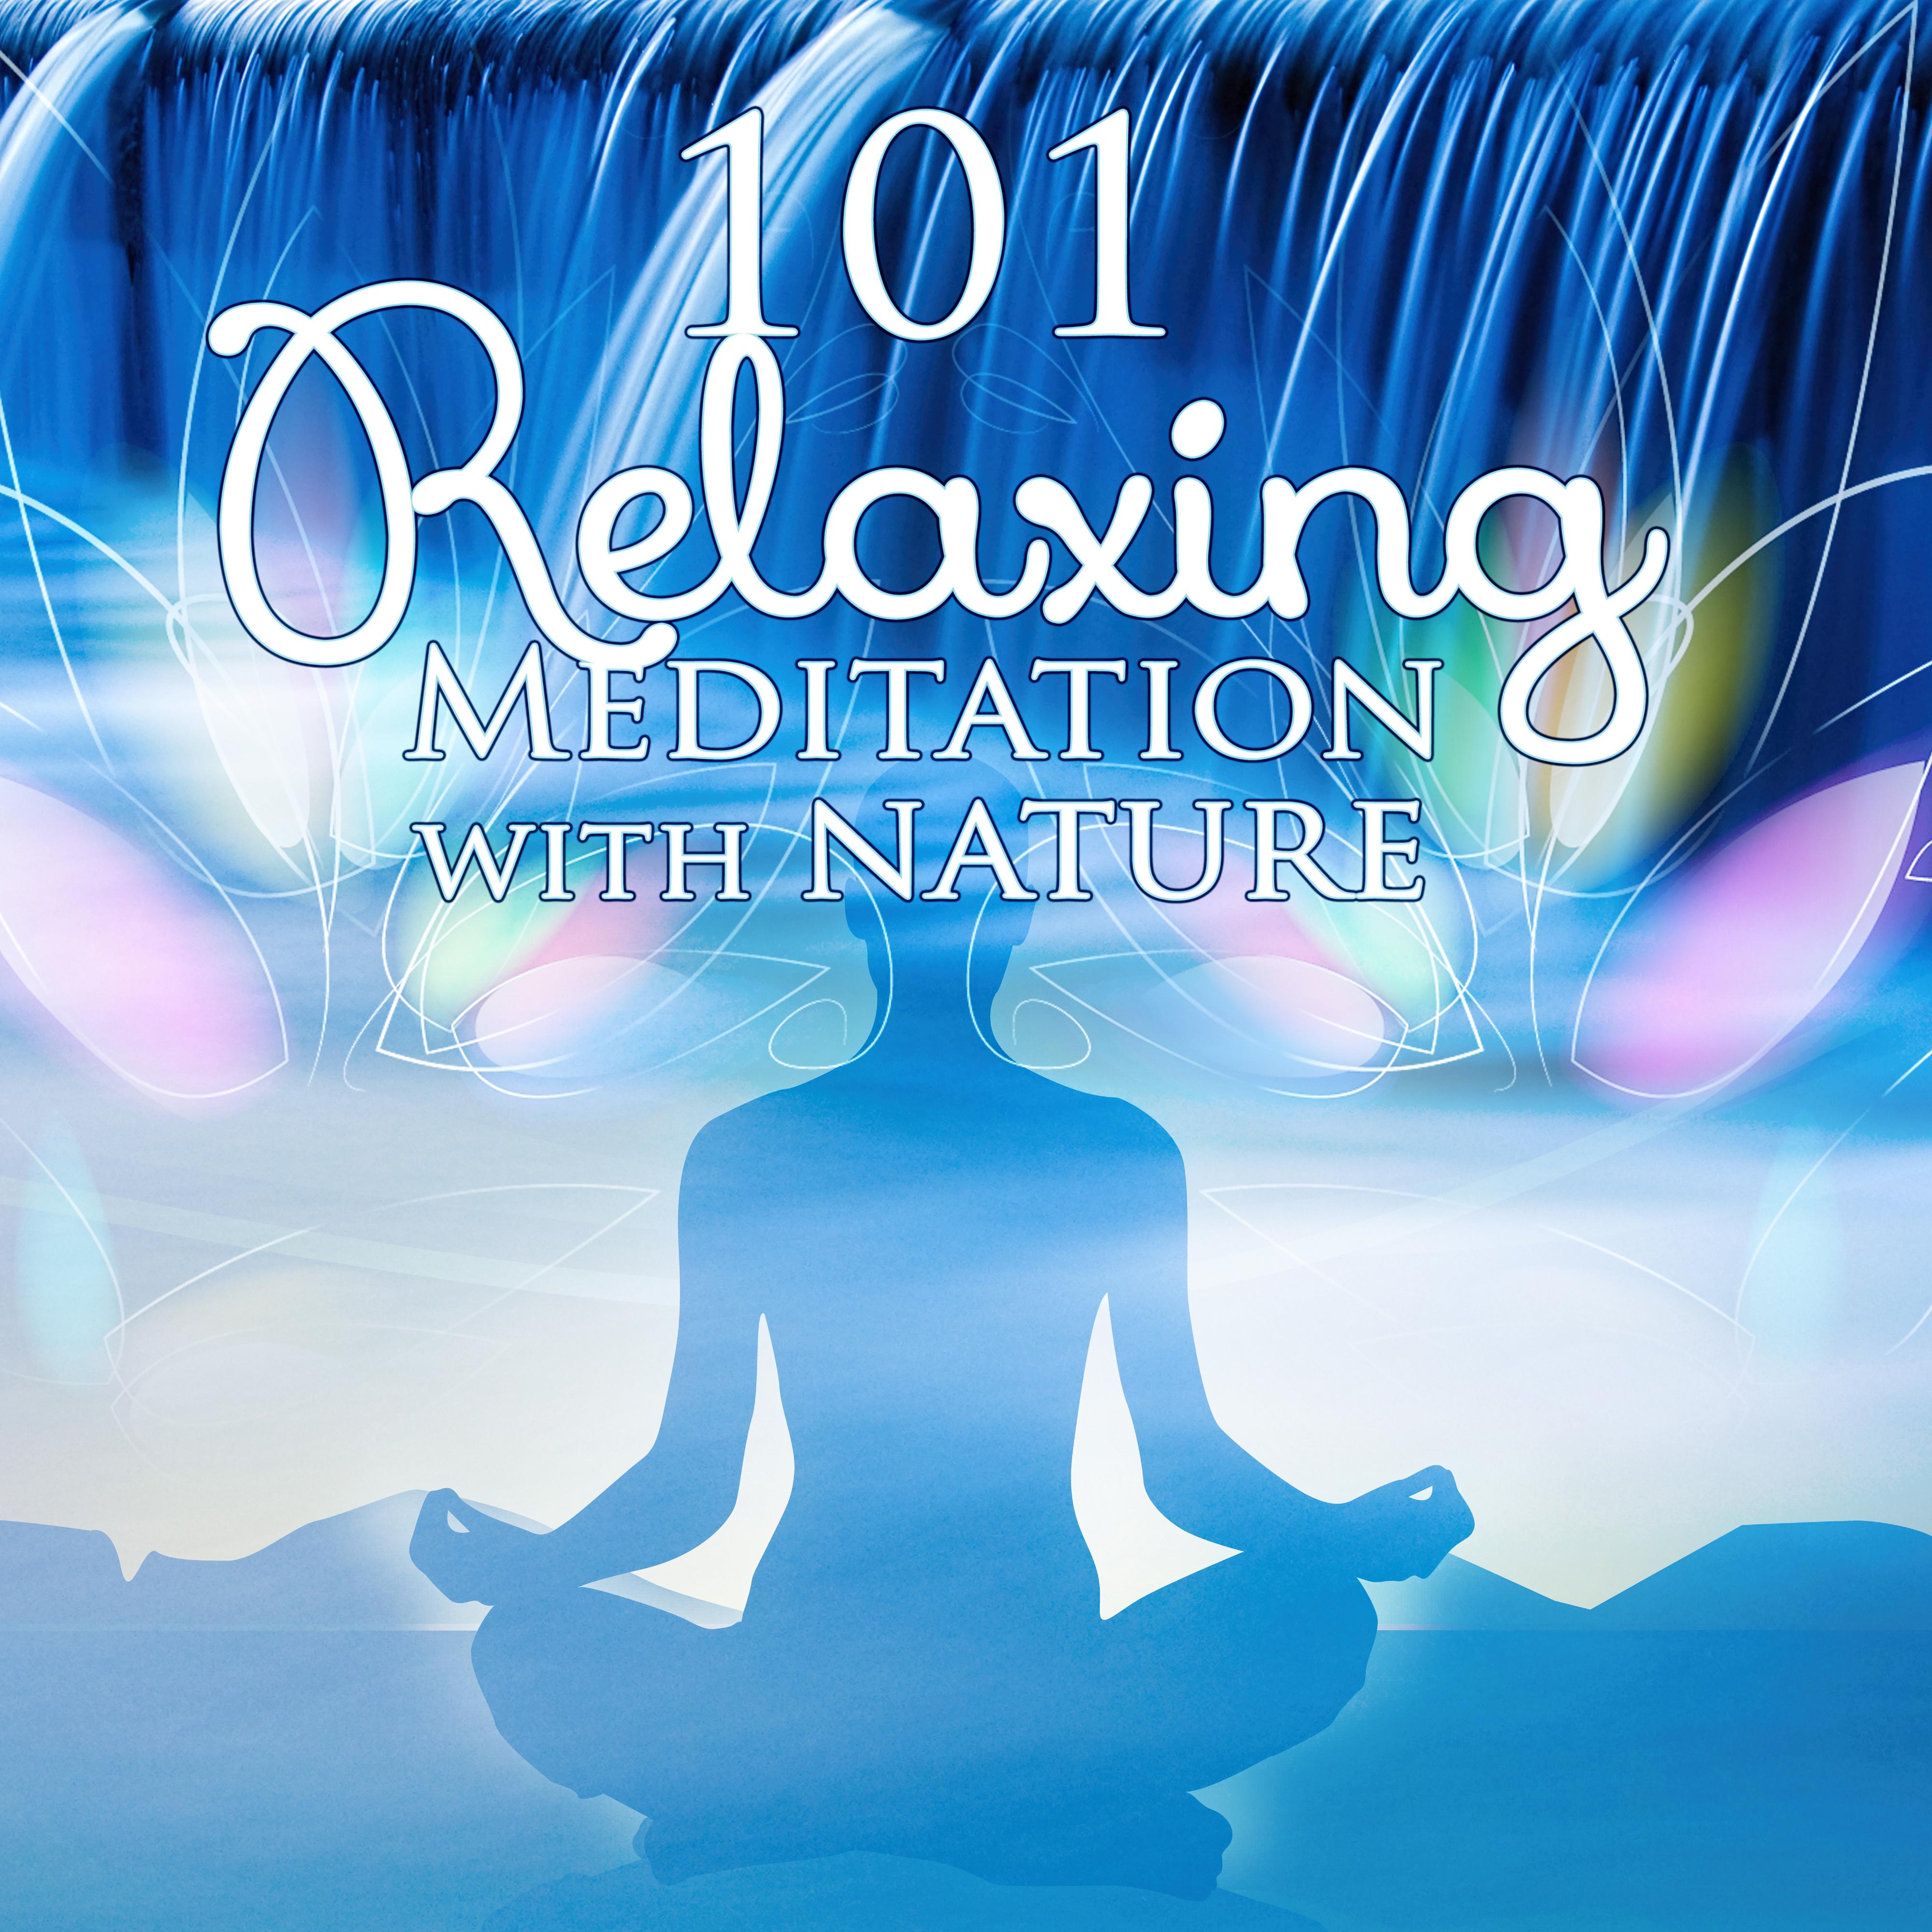 50 Zen Relaxation